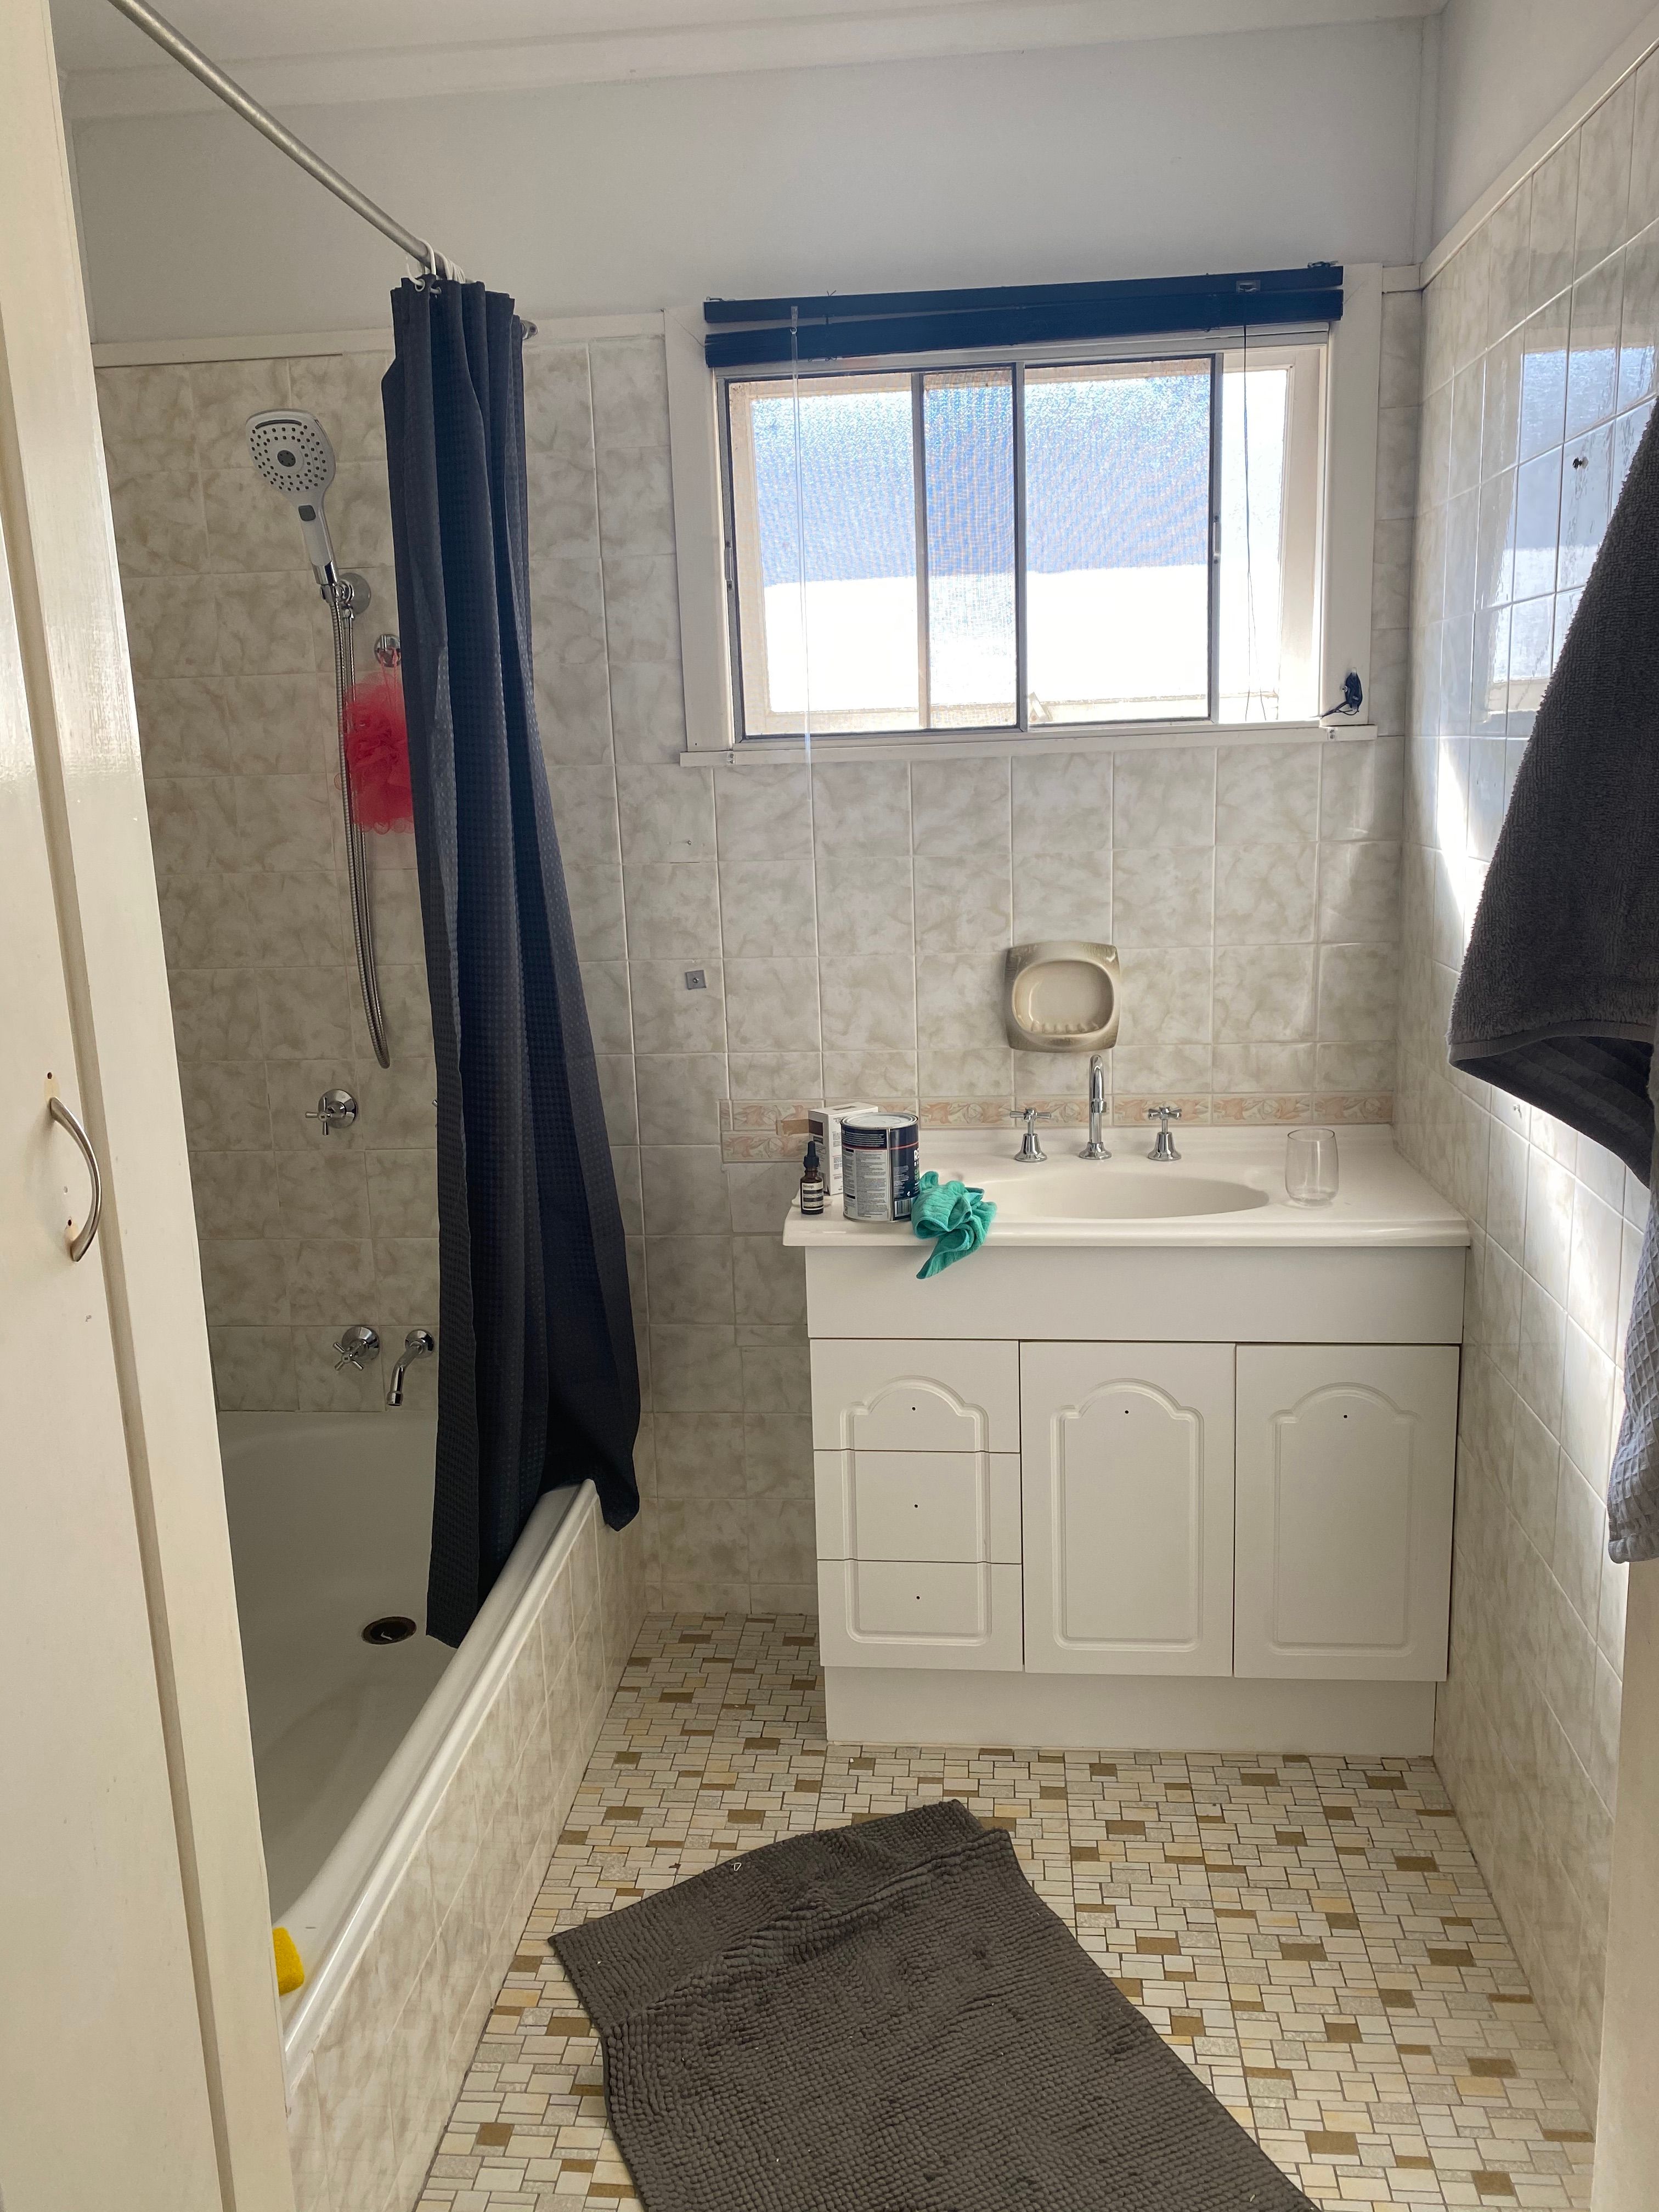 Bathroom tiles refresh | Bunnings Workshop community